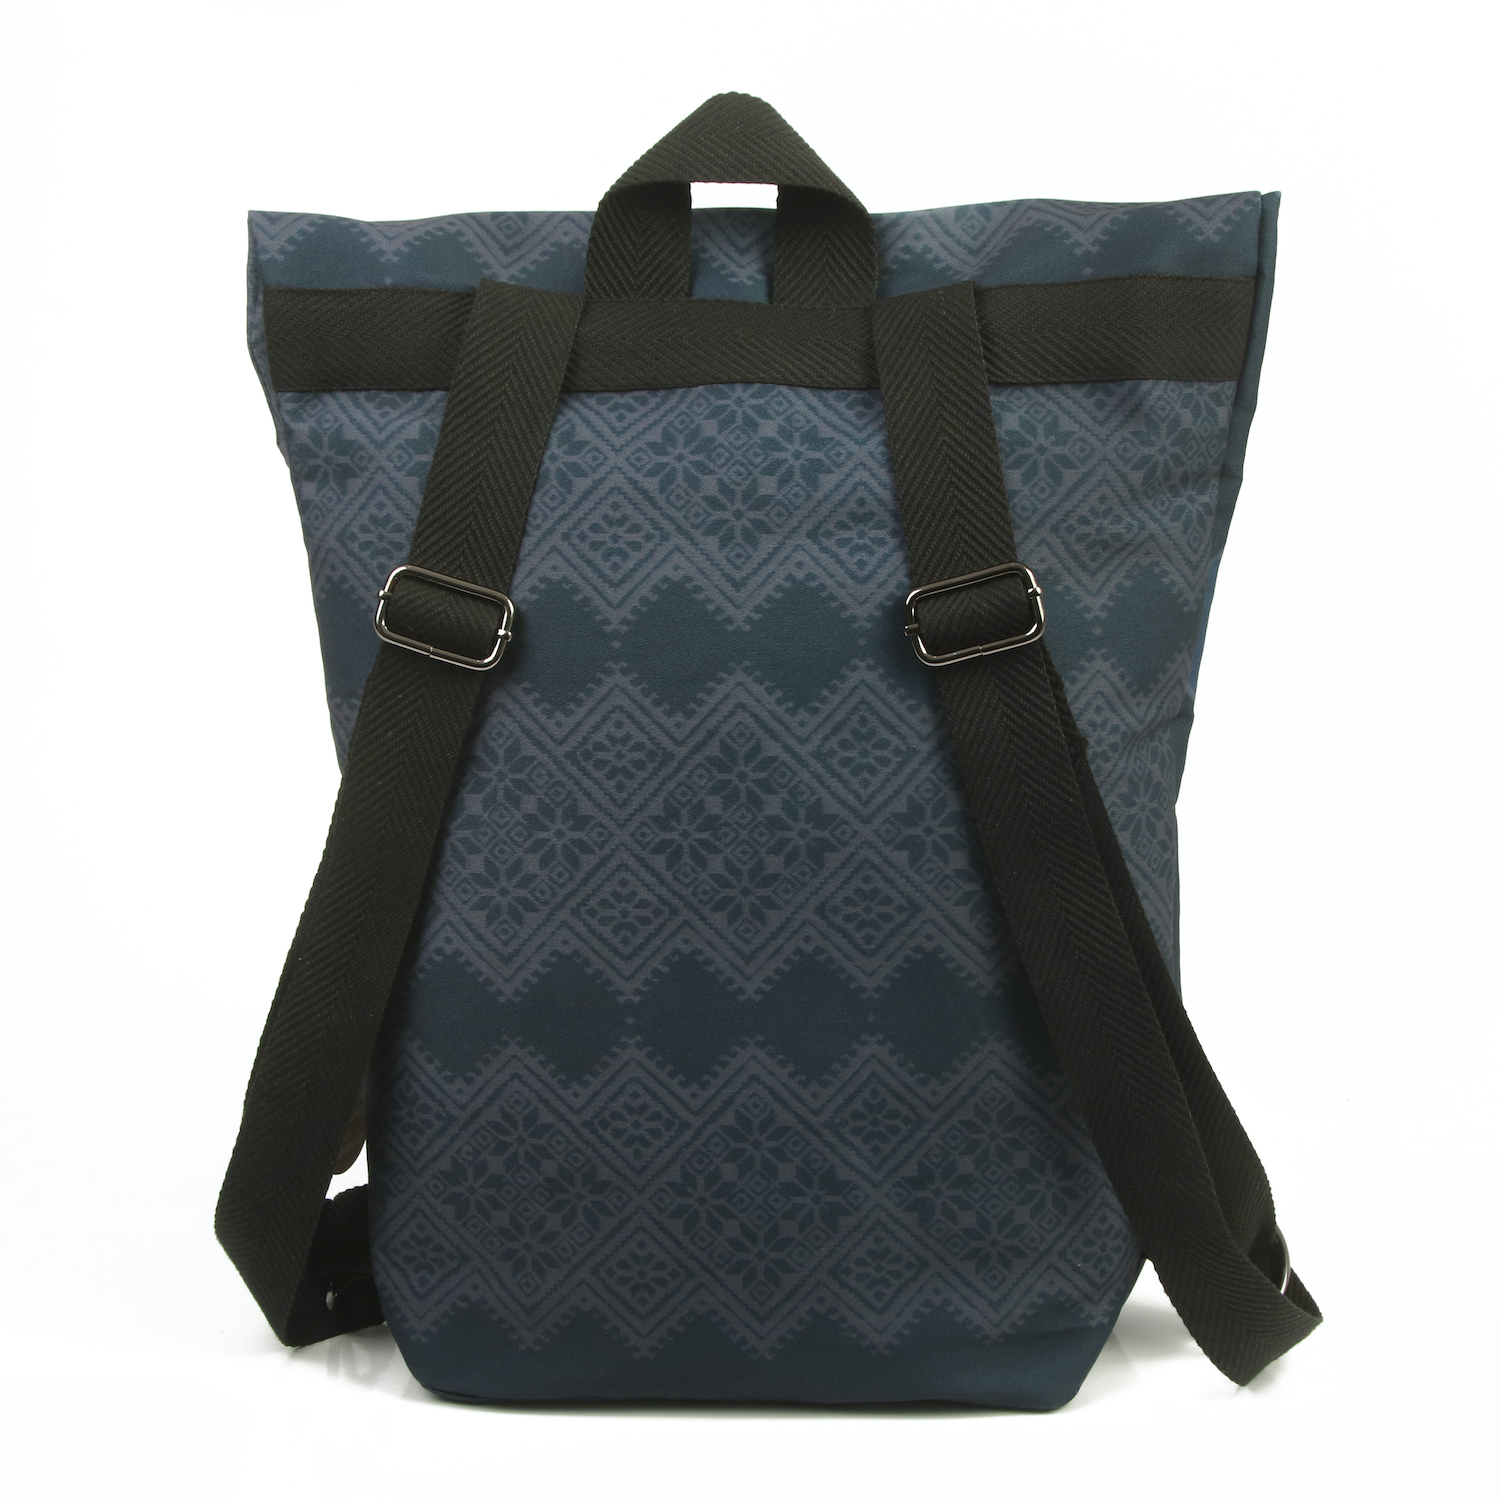 LazyDayz Designs Backpack γυναικείος σάκος πλάτης χειροποίητος bb0801c